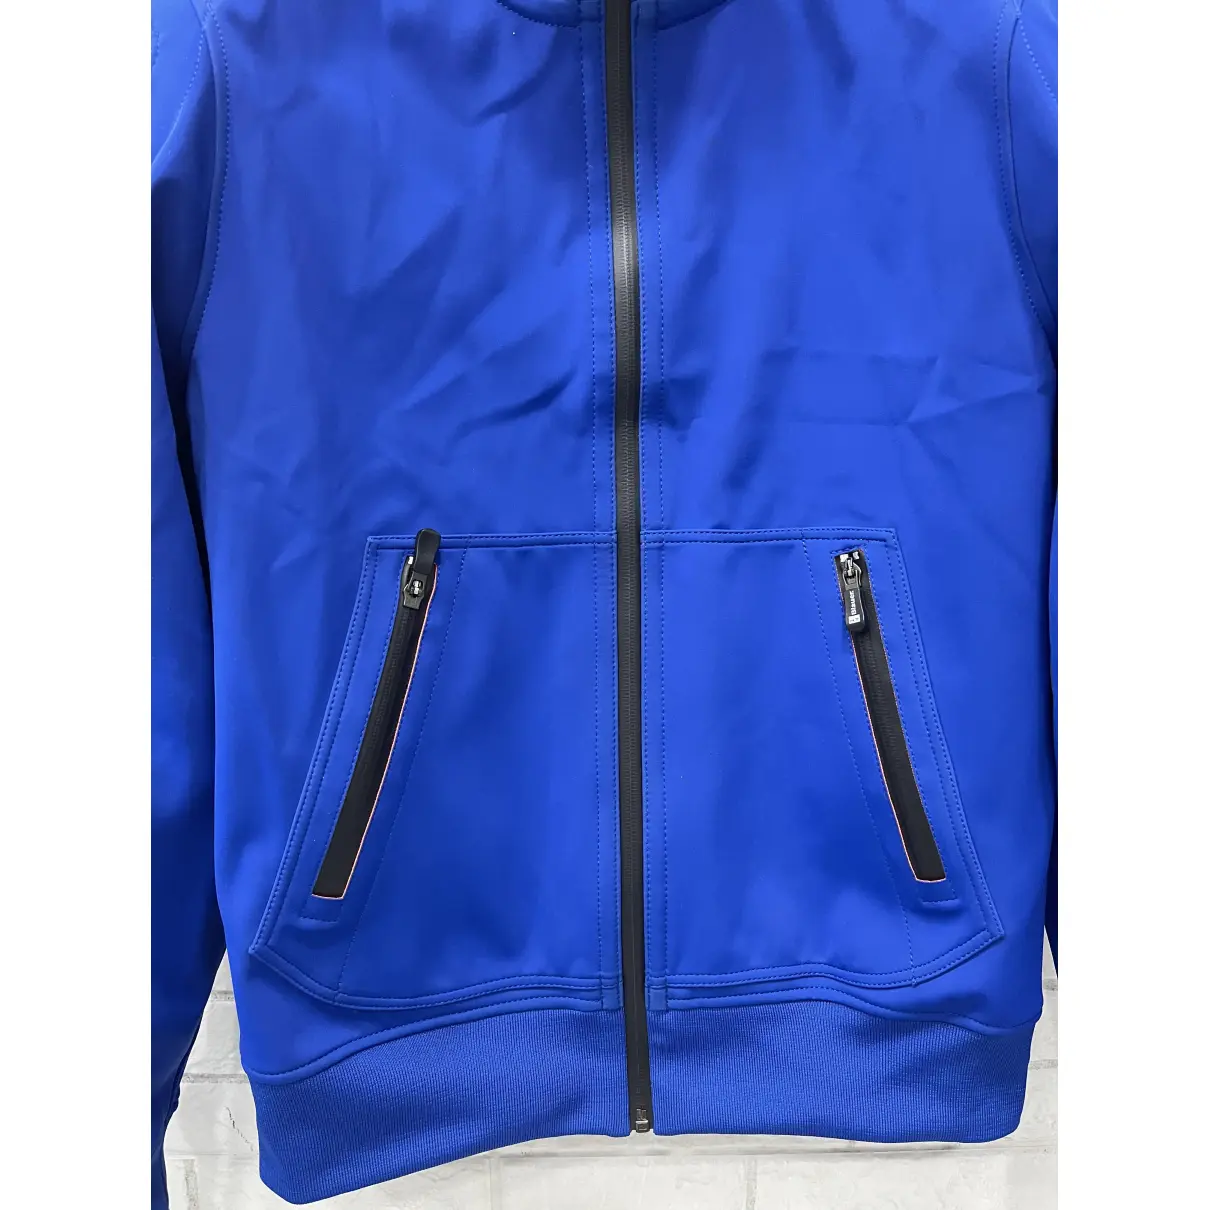 Buy Blauer Jacket online